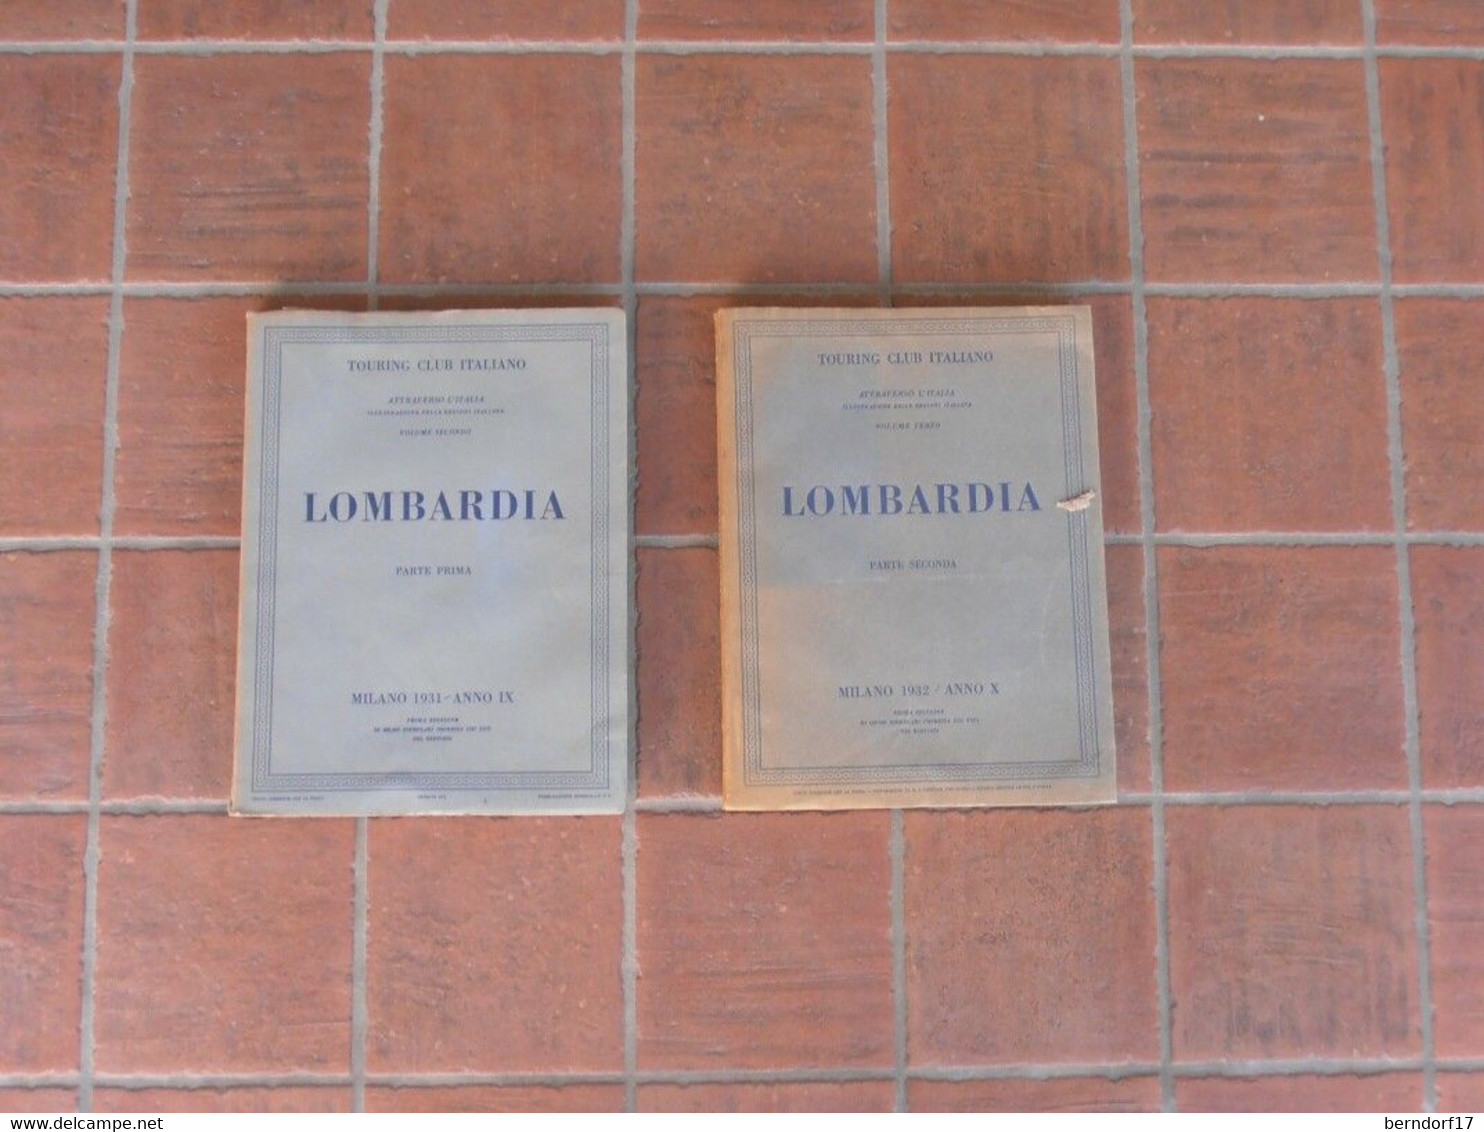 LOMBARDIA - Touring Club Italiano - Vol. 1 E 2 - Pictures